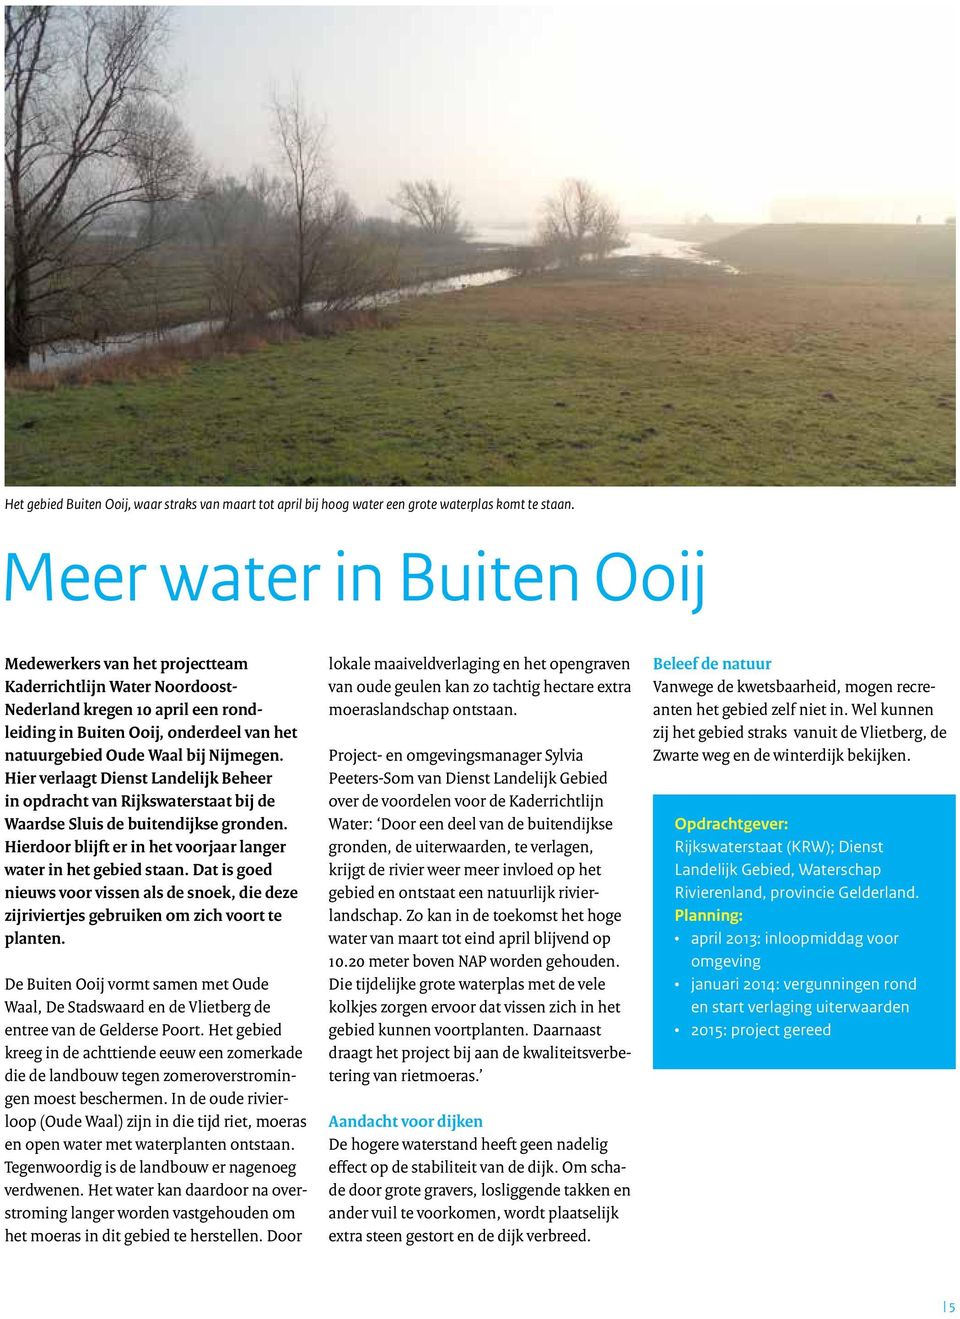 Nijmegen. Hier verlaagt Dienst Landelijk Beheer in opdracht van Rijkswaterstaat bij de Waardse Sluis de buitendijkse gronden. Hierdoor blijft er in het voorjaar langer water in het gebied staan.